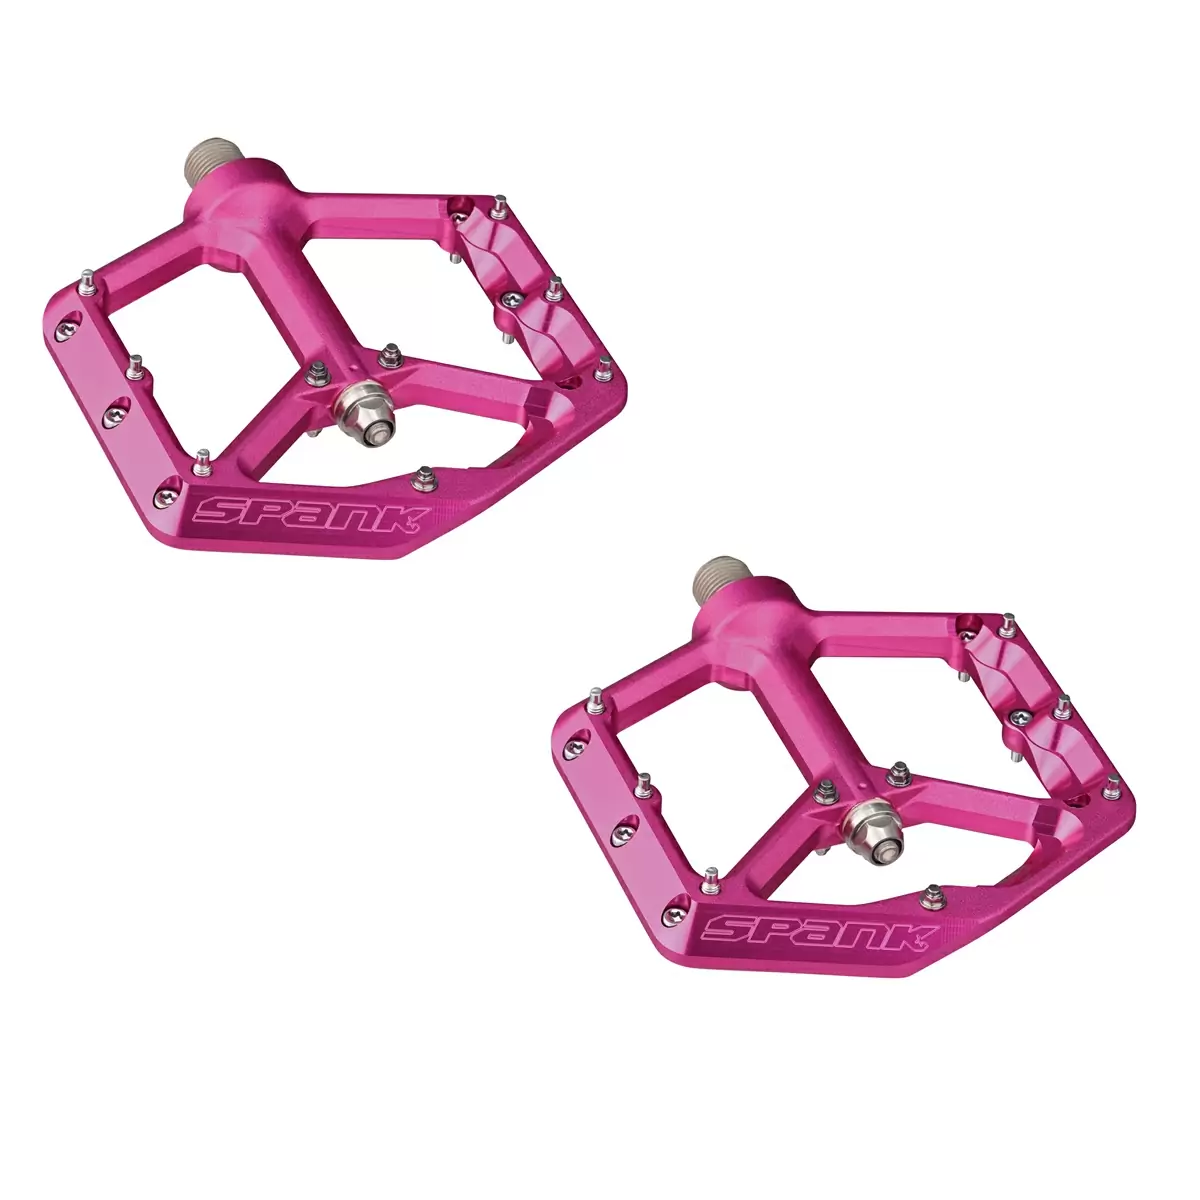 Pair Oozy Reboot Pedals Pink - image